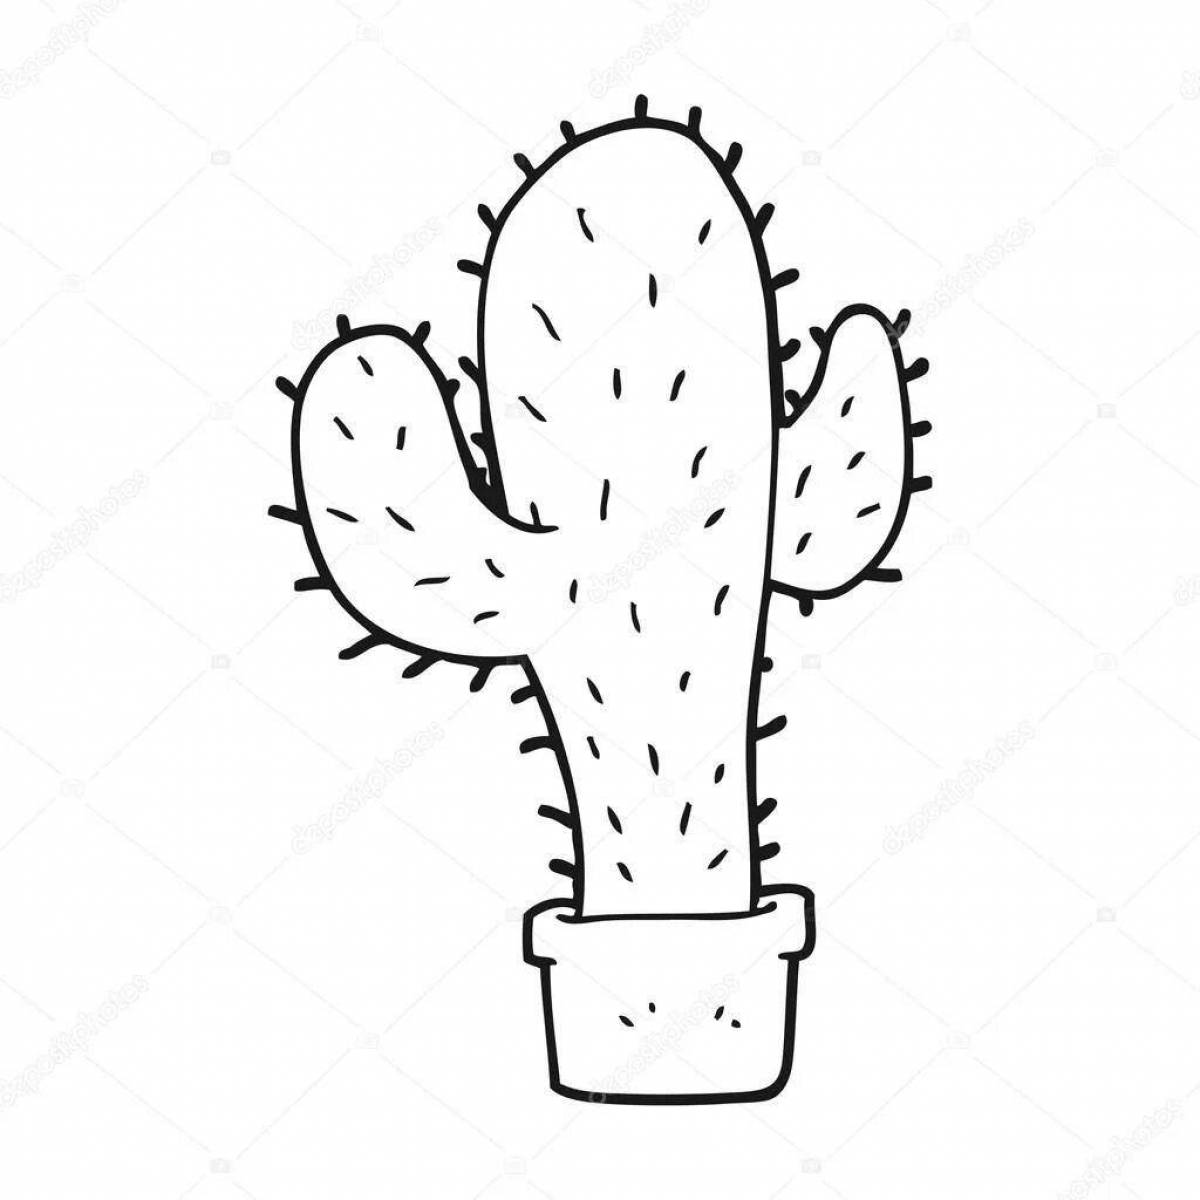 Cute cactus in a pot for children